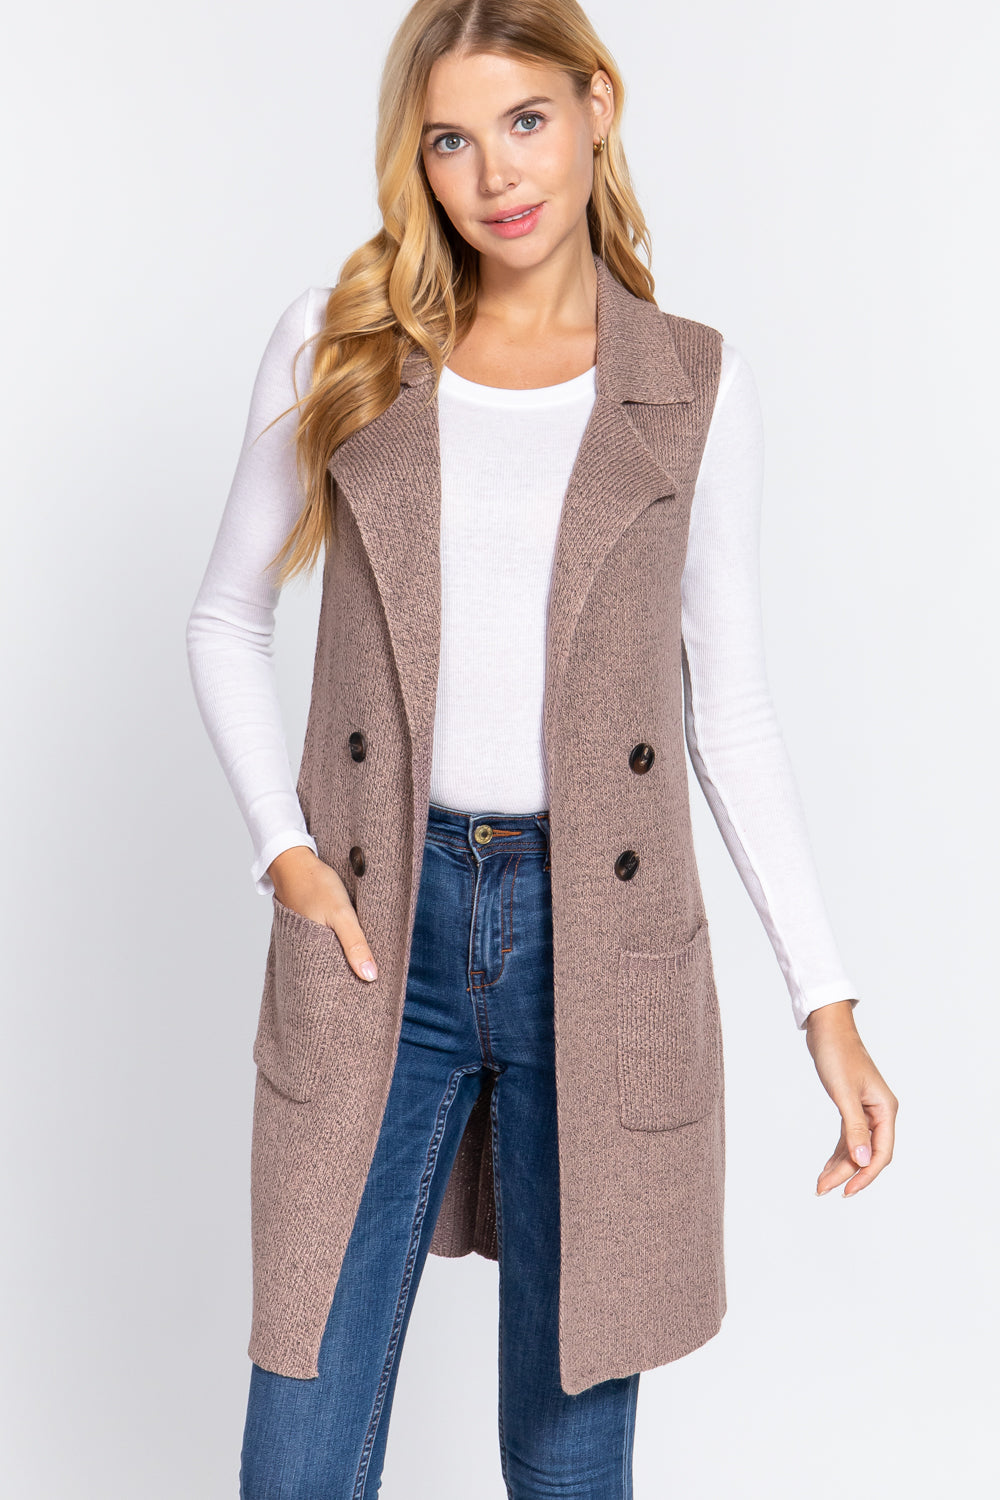 Mauve - Sleeveless Long Sweater Vest -10 colors - womens vest at TFC&H Co.